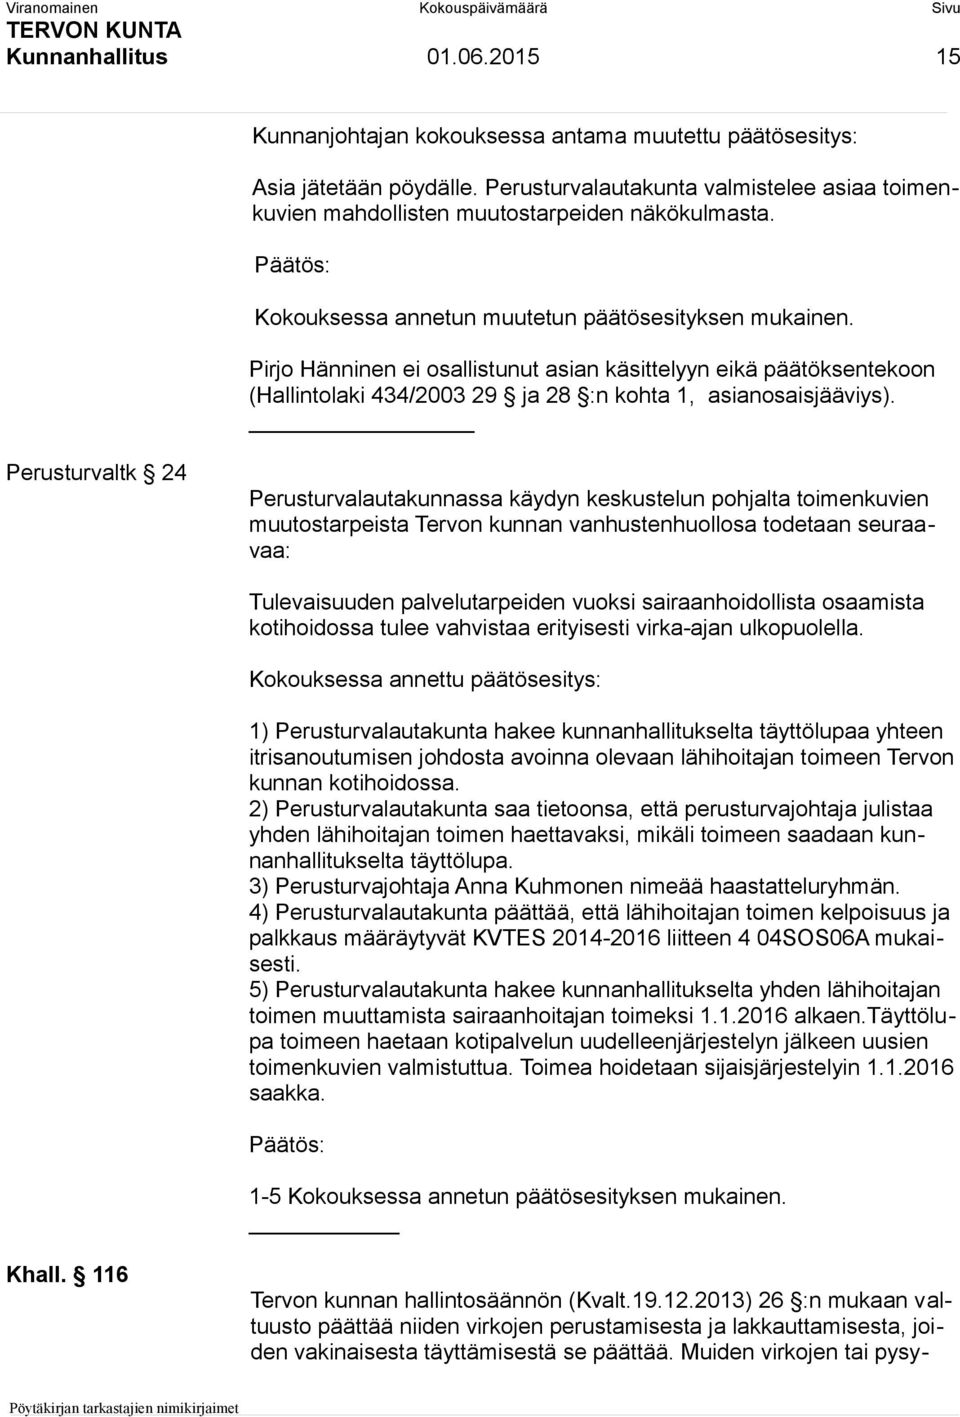 Pirjo Hänninen ei osallistunut asian käsittelyyn eikä päätöksentekoon (Hallintolaki 434/2003 29 ja 28 :n kohta 1, asianosaisjääviys).